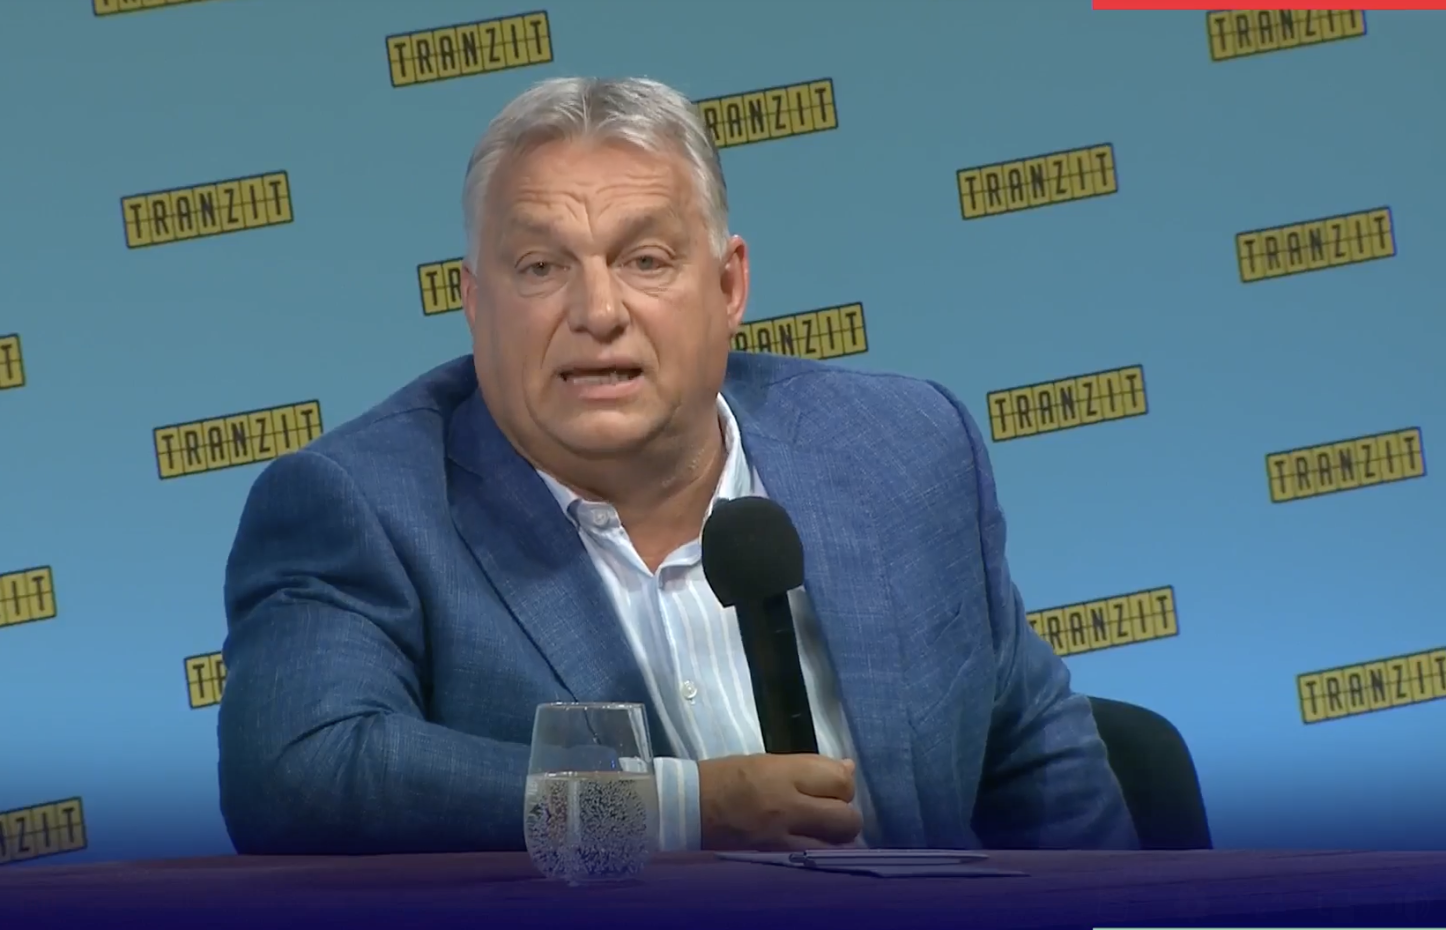 Orbán a Tranziton: Ha mindenki teszi a dolgát, akkor bingó, akkor királyság van, akkor  nagyok és erősek leszünk